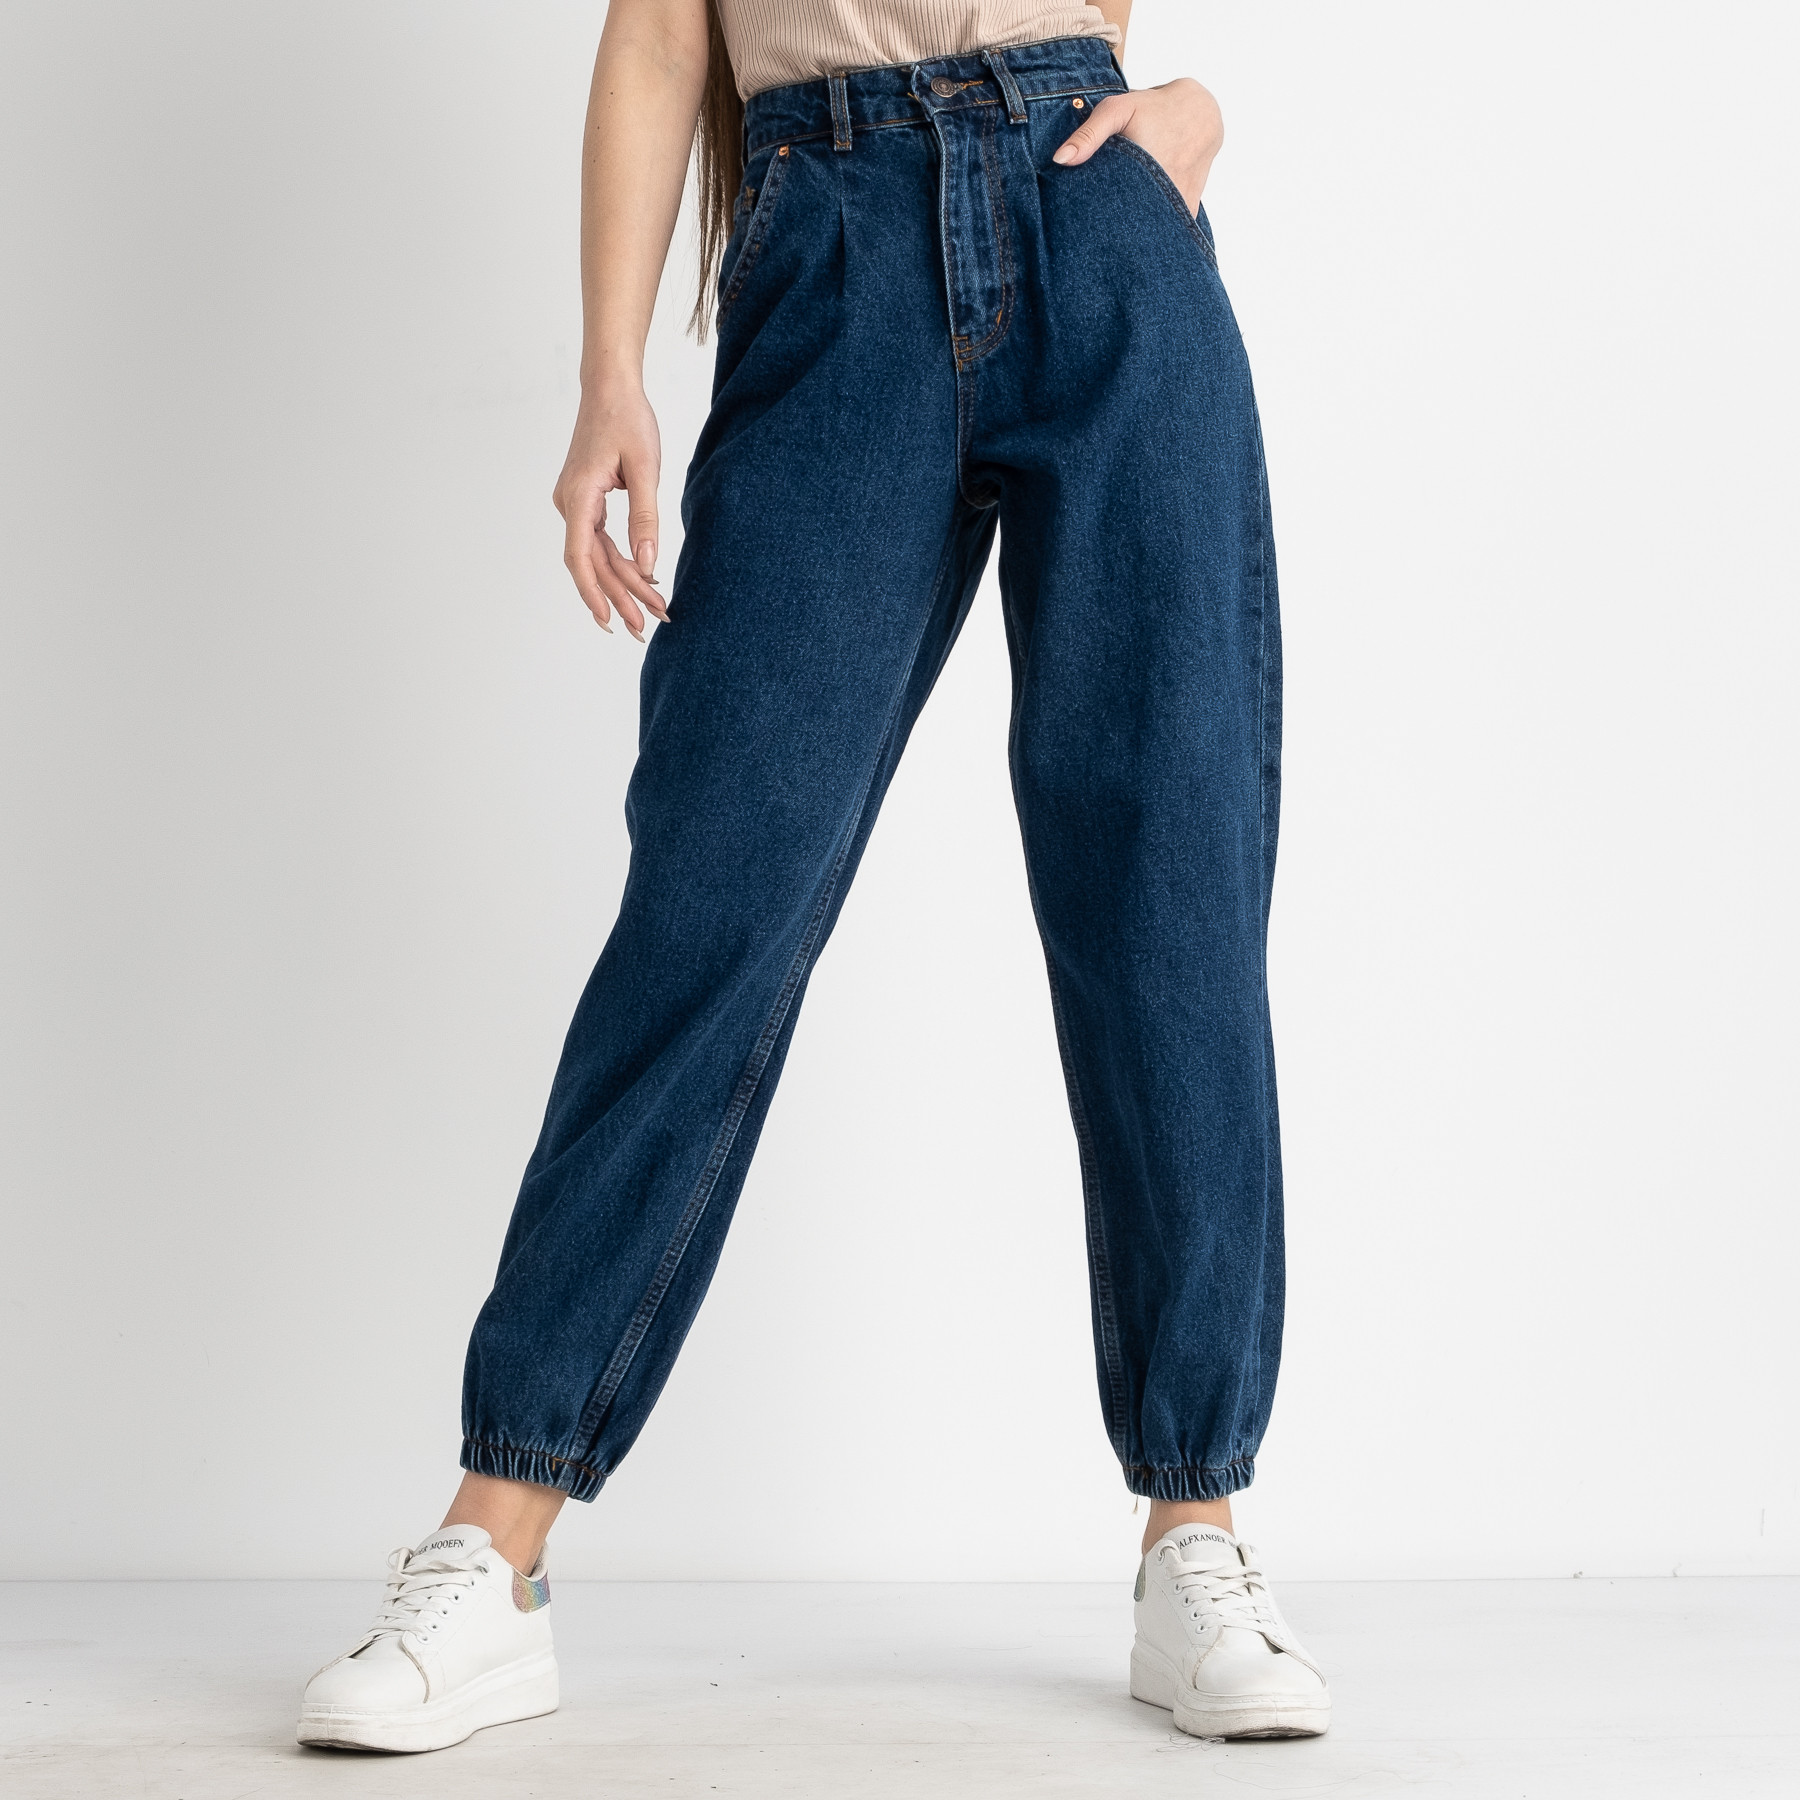 1178 джинсы-баллоны женские синие котоновые ( 7 ед . размеры : 25.26.28/3.30/2)